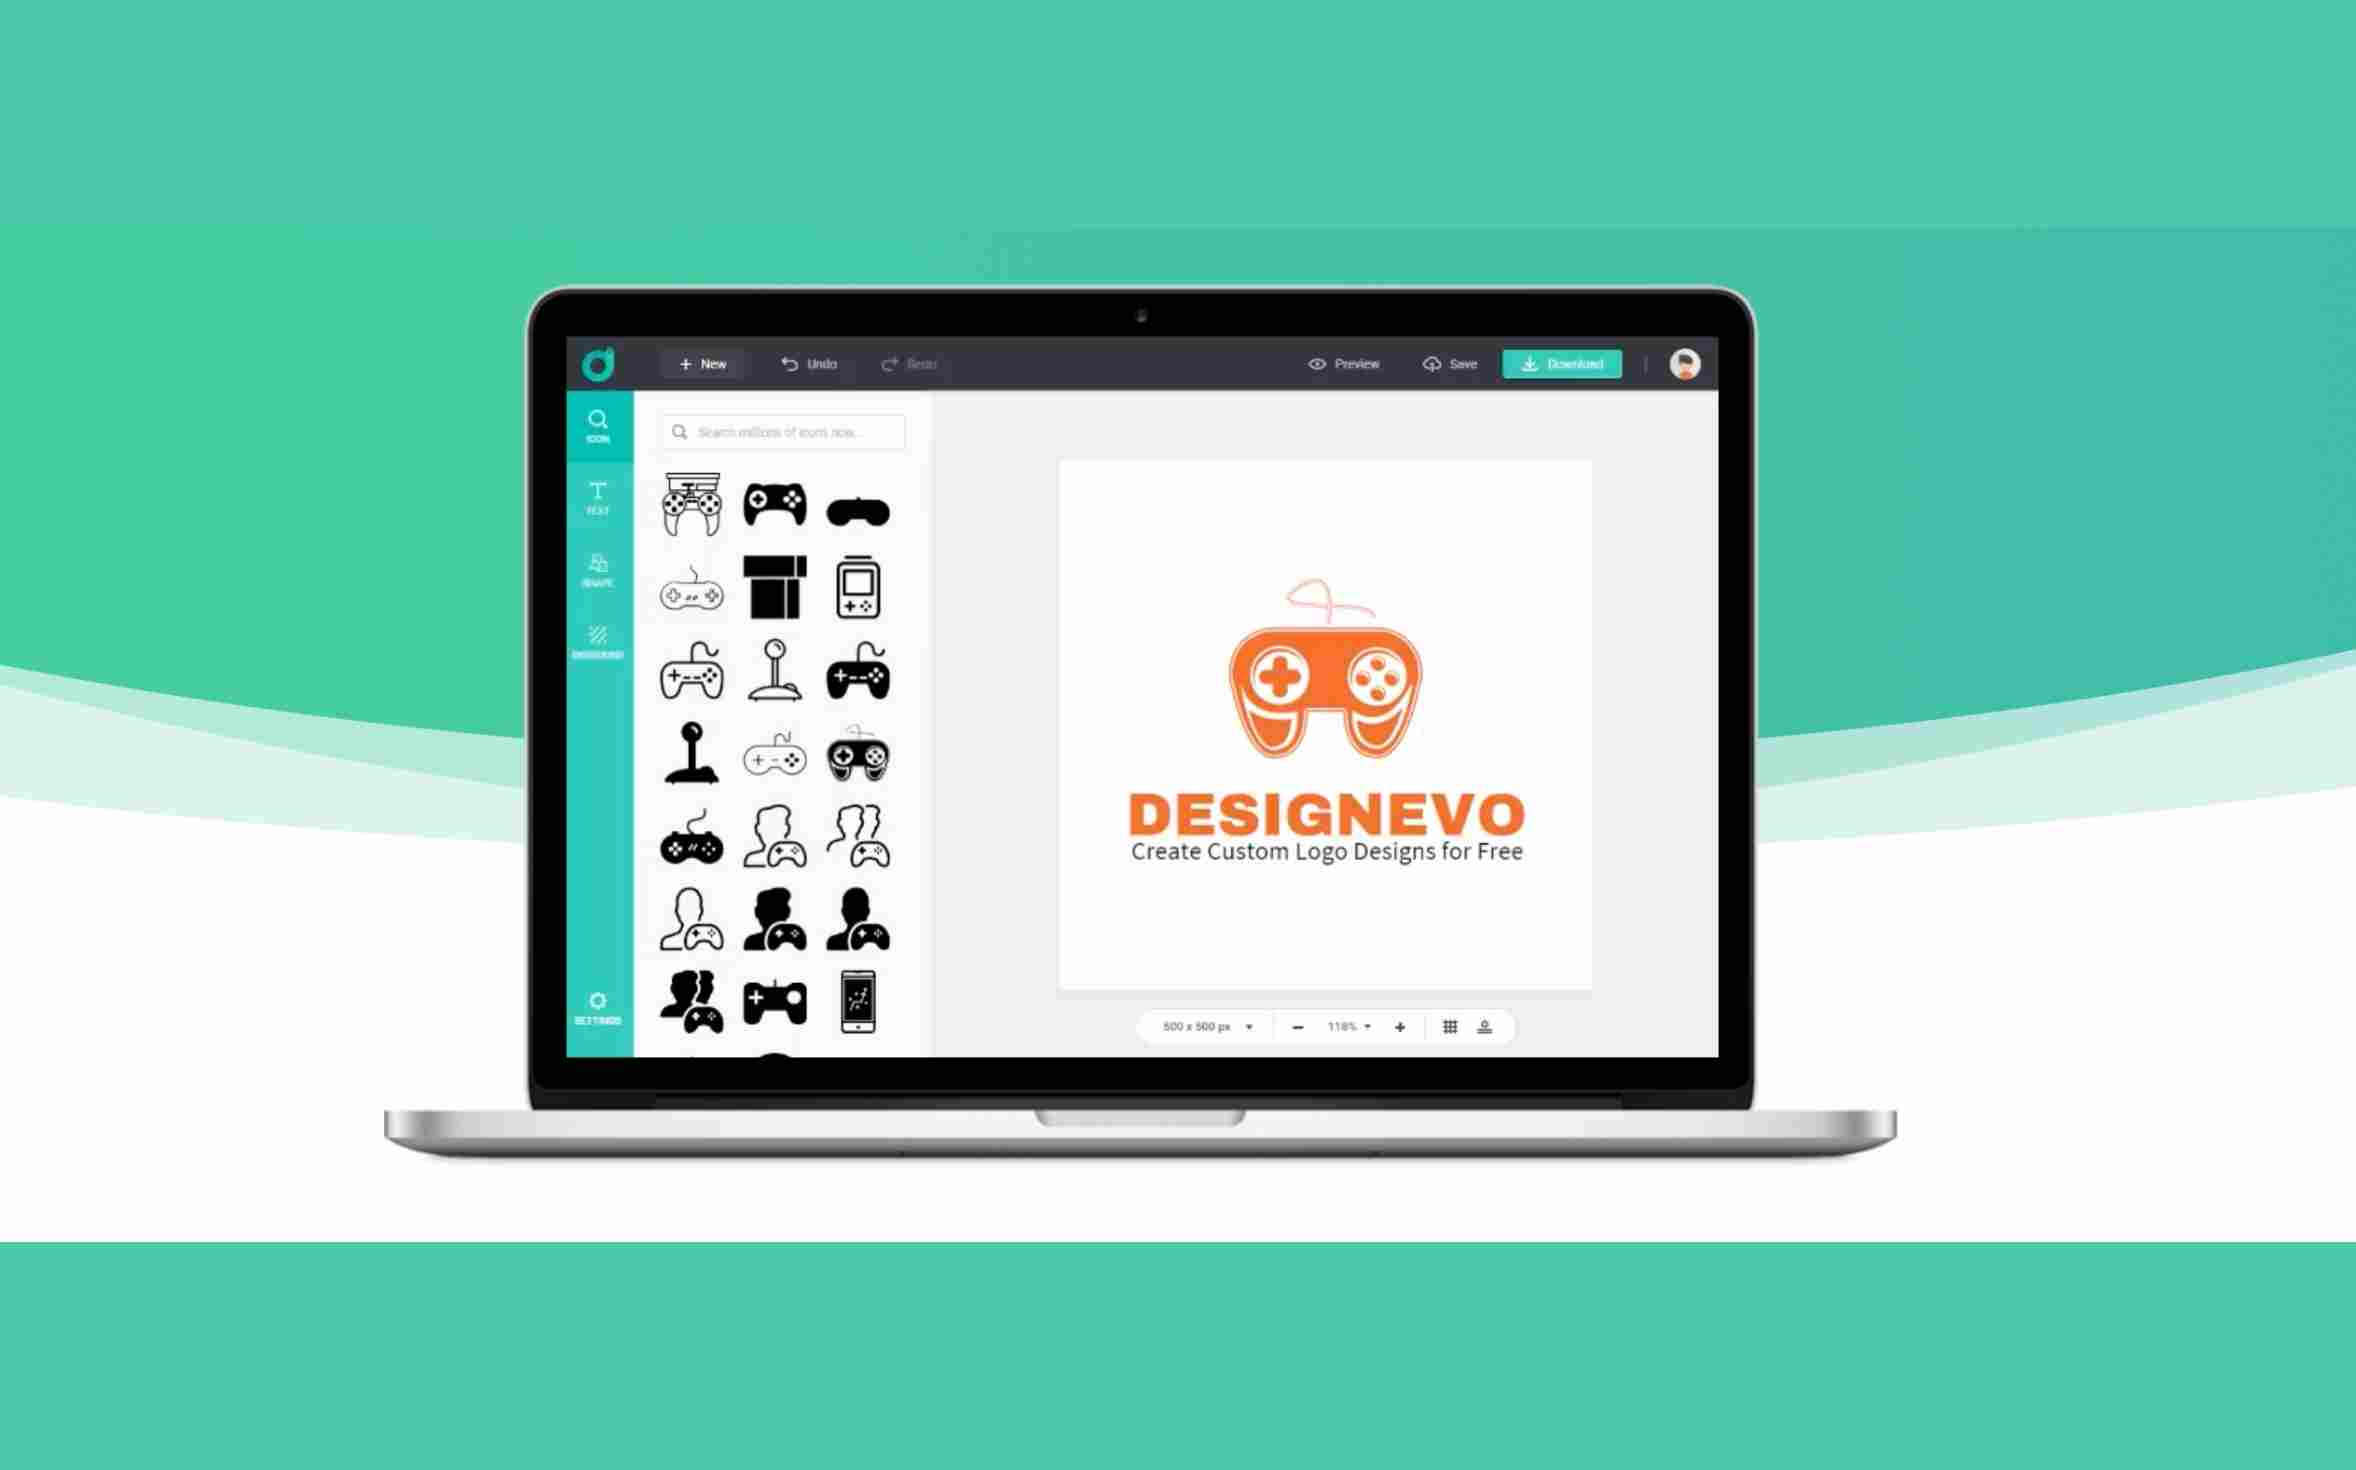 無料でロゴ作成できるツール「DesignEvo」の特徴・使い方を徹底解説